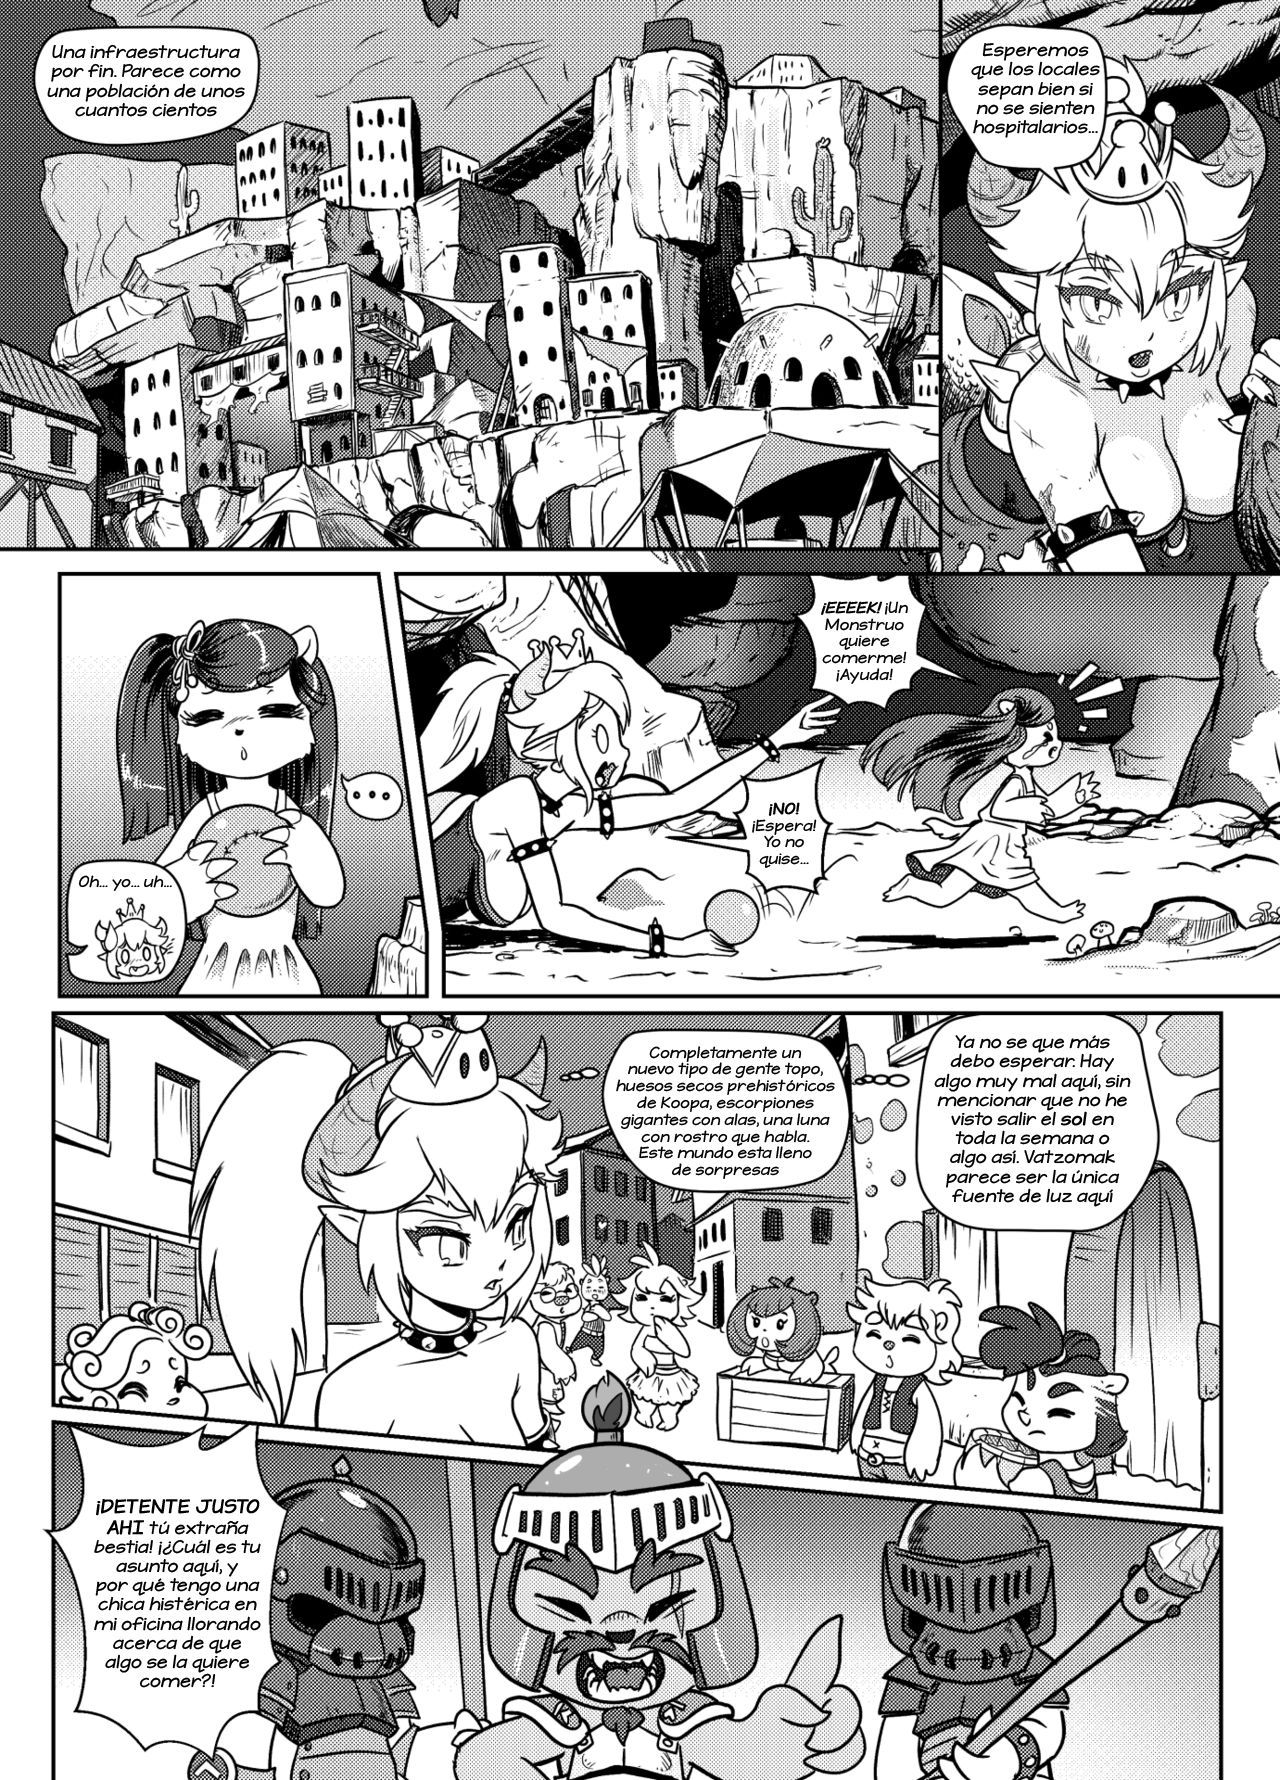 [Pencils] Bowsette Saga Vol.1 Y Vol.2 Completos - Vol.3 En Progreso (Mario Bros.) [Spanish] by Arkoniusx 16